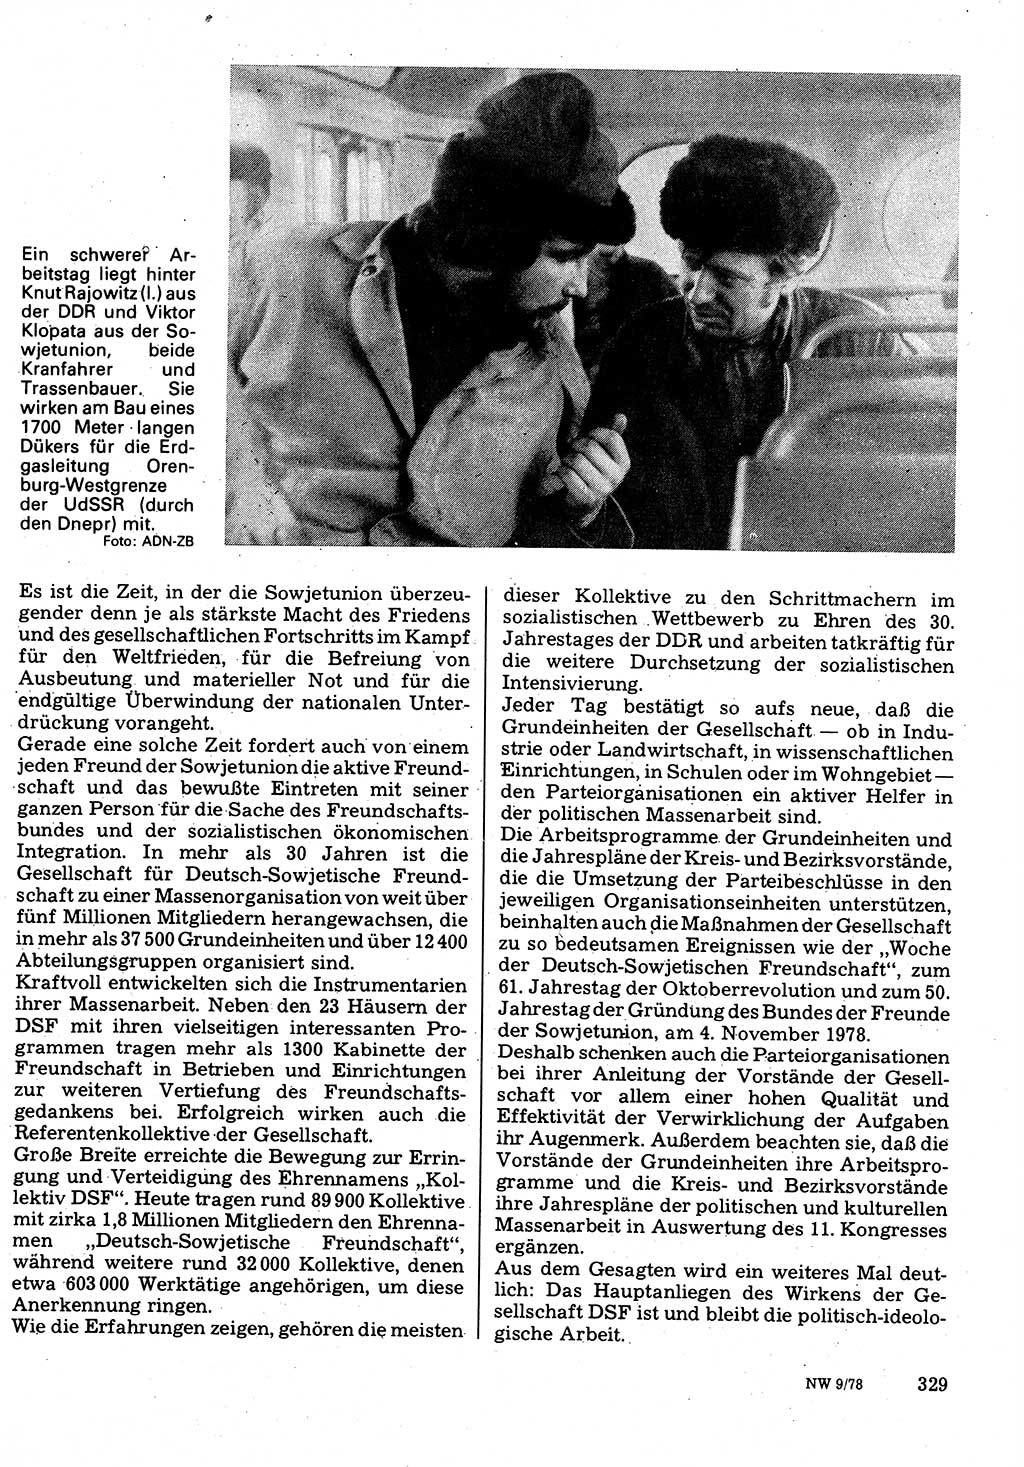 Neuer Weg (NW), Organ des Zentralkomitees (ZK) der SED (Sozialistische Einheitspartei Deutschlands) für Fragen des Parteilebens, 33. Jahrgang [Deutsche Demokratische Republik (DDR)] 1978, Seite 329 (NW ZK SED DDR 1978, S. 329)